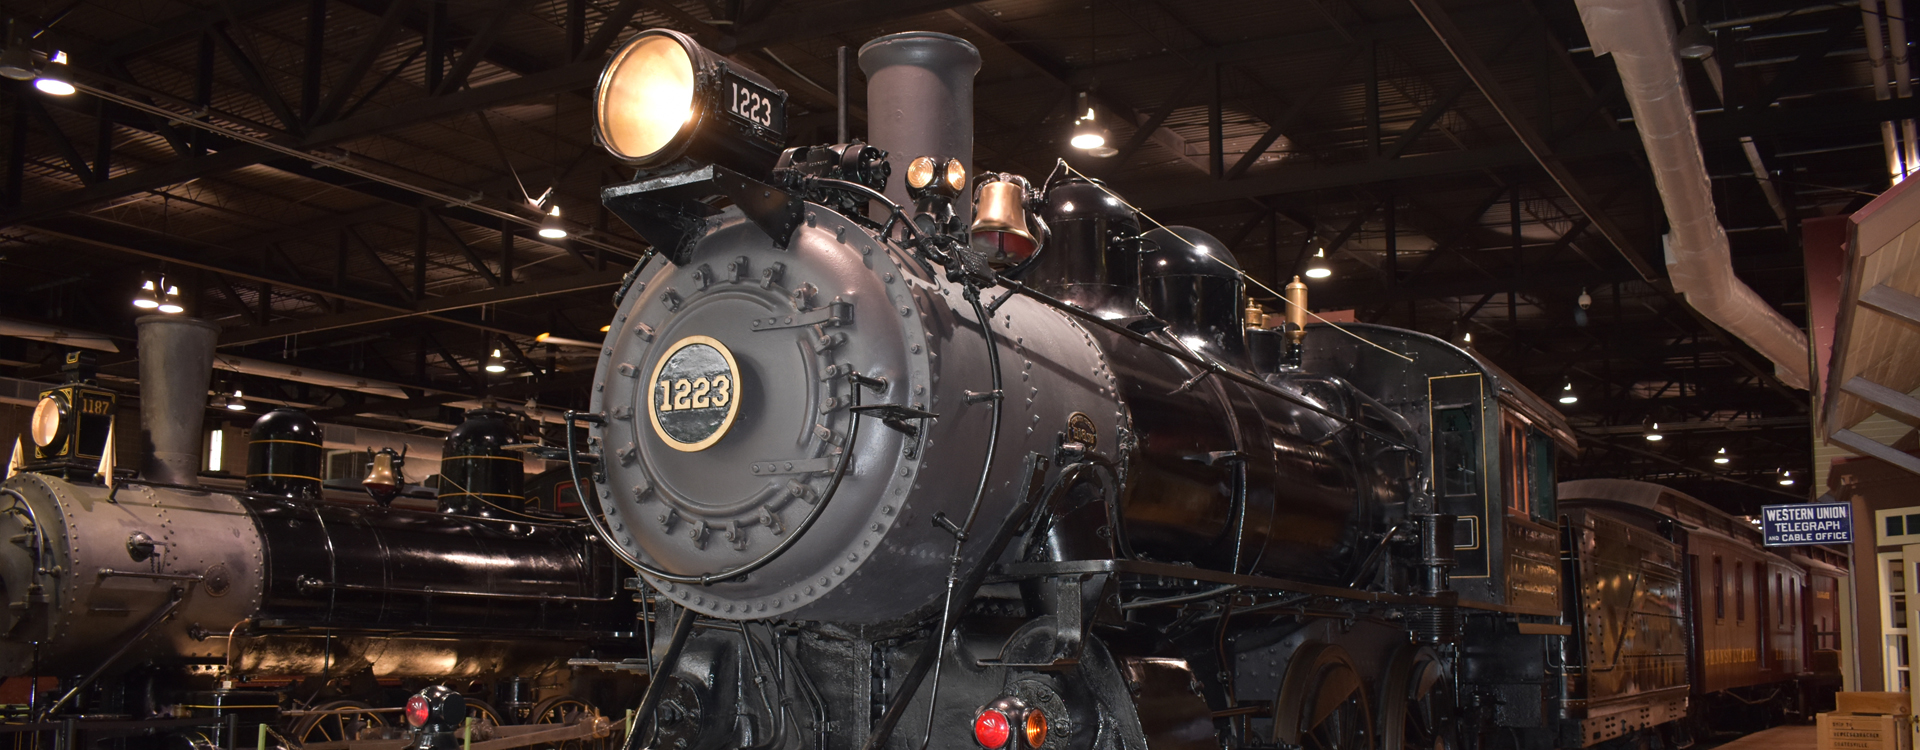 Музей железных дорог Пенсильвании и музей “Американское сокровище”